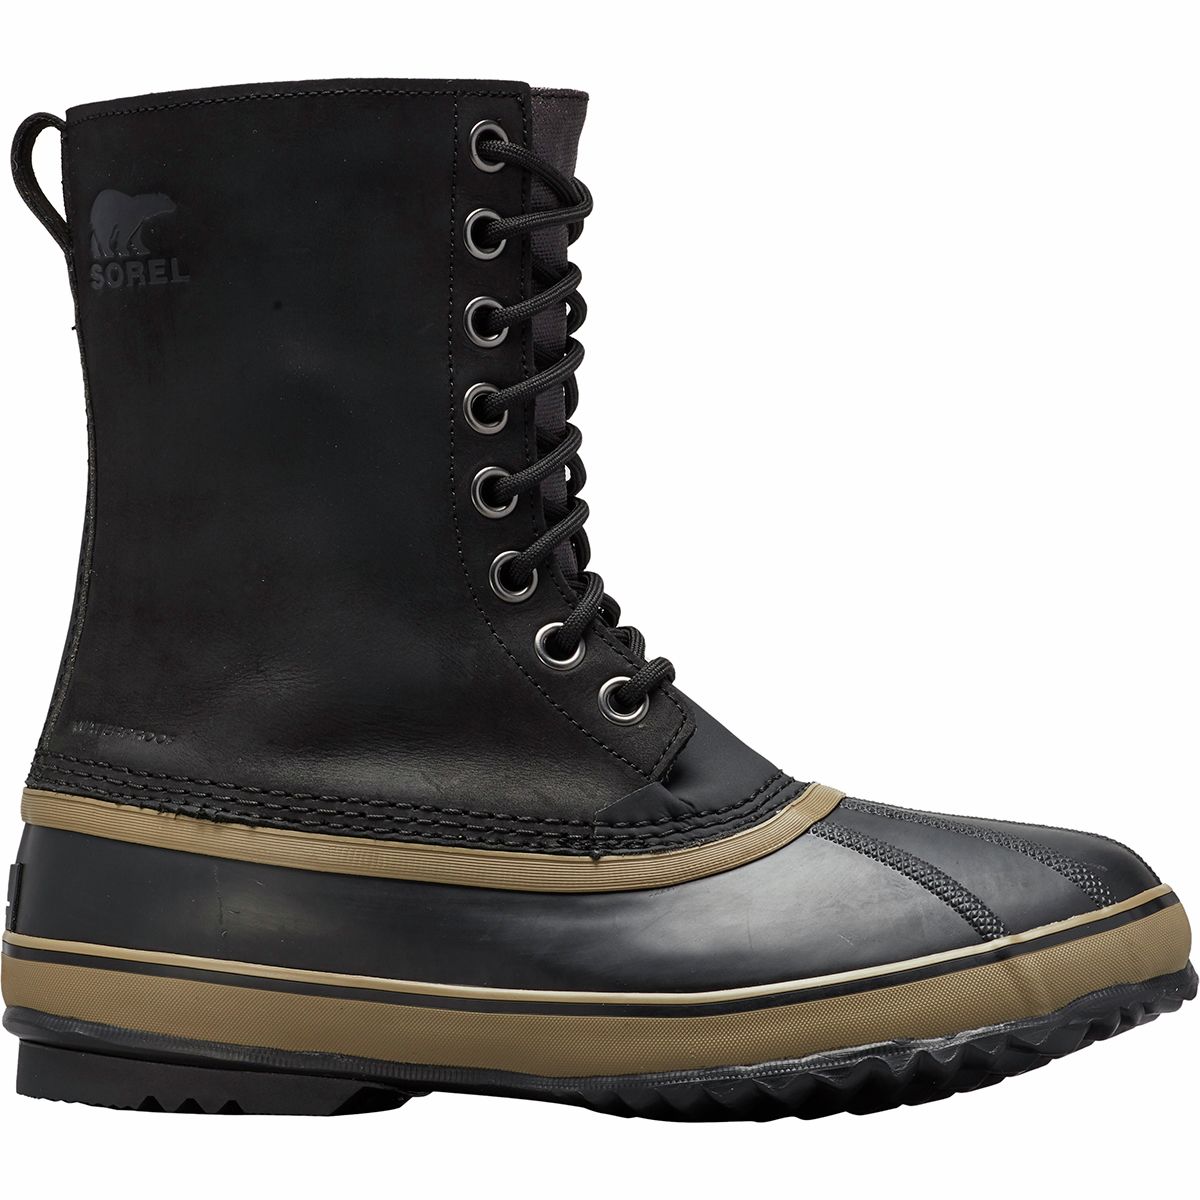 Sorel 1964 Premium Leather Boot - Men's